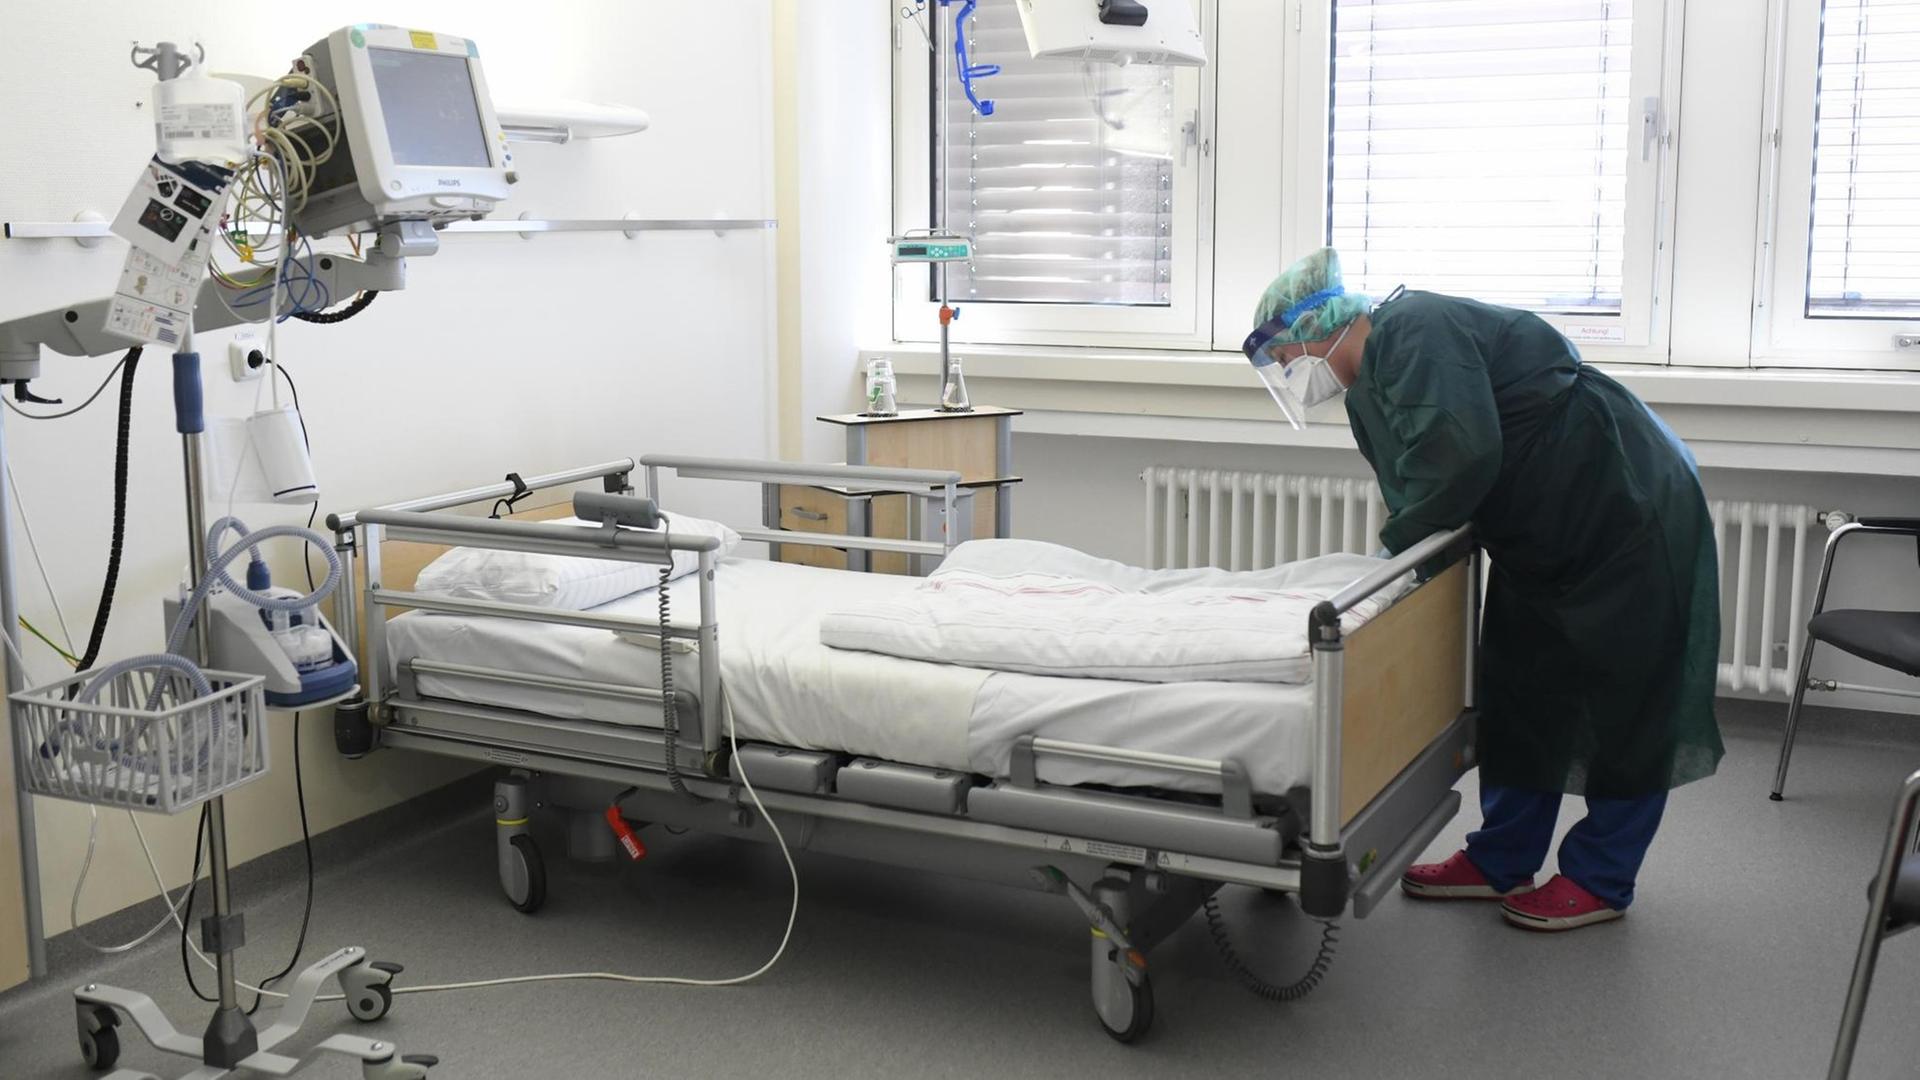 Eine Krankenpflegerin in Schutzkleidung überprüft ein leeres Bett auf der Intensivstation.